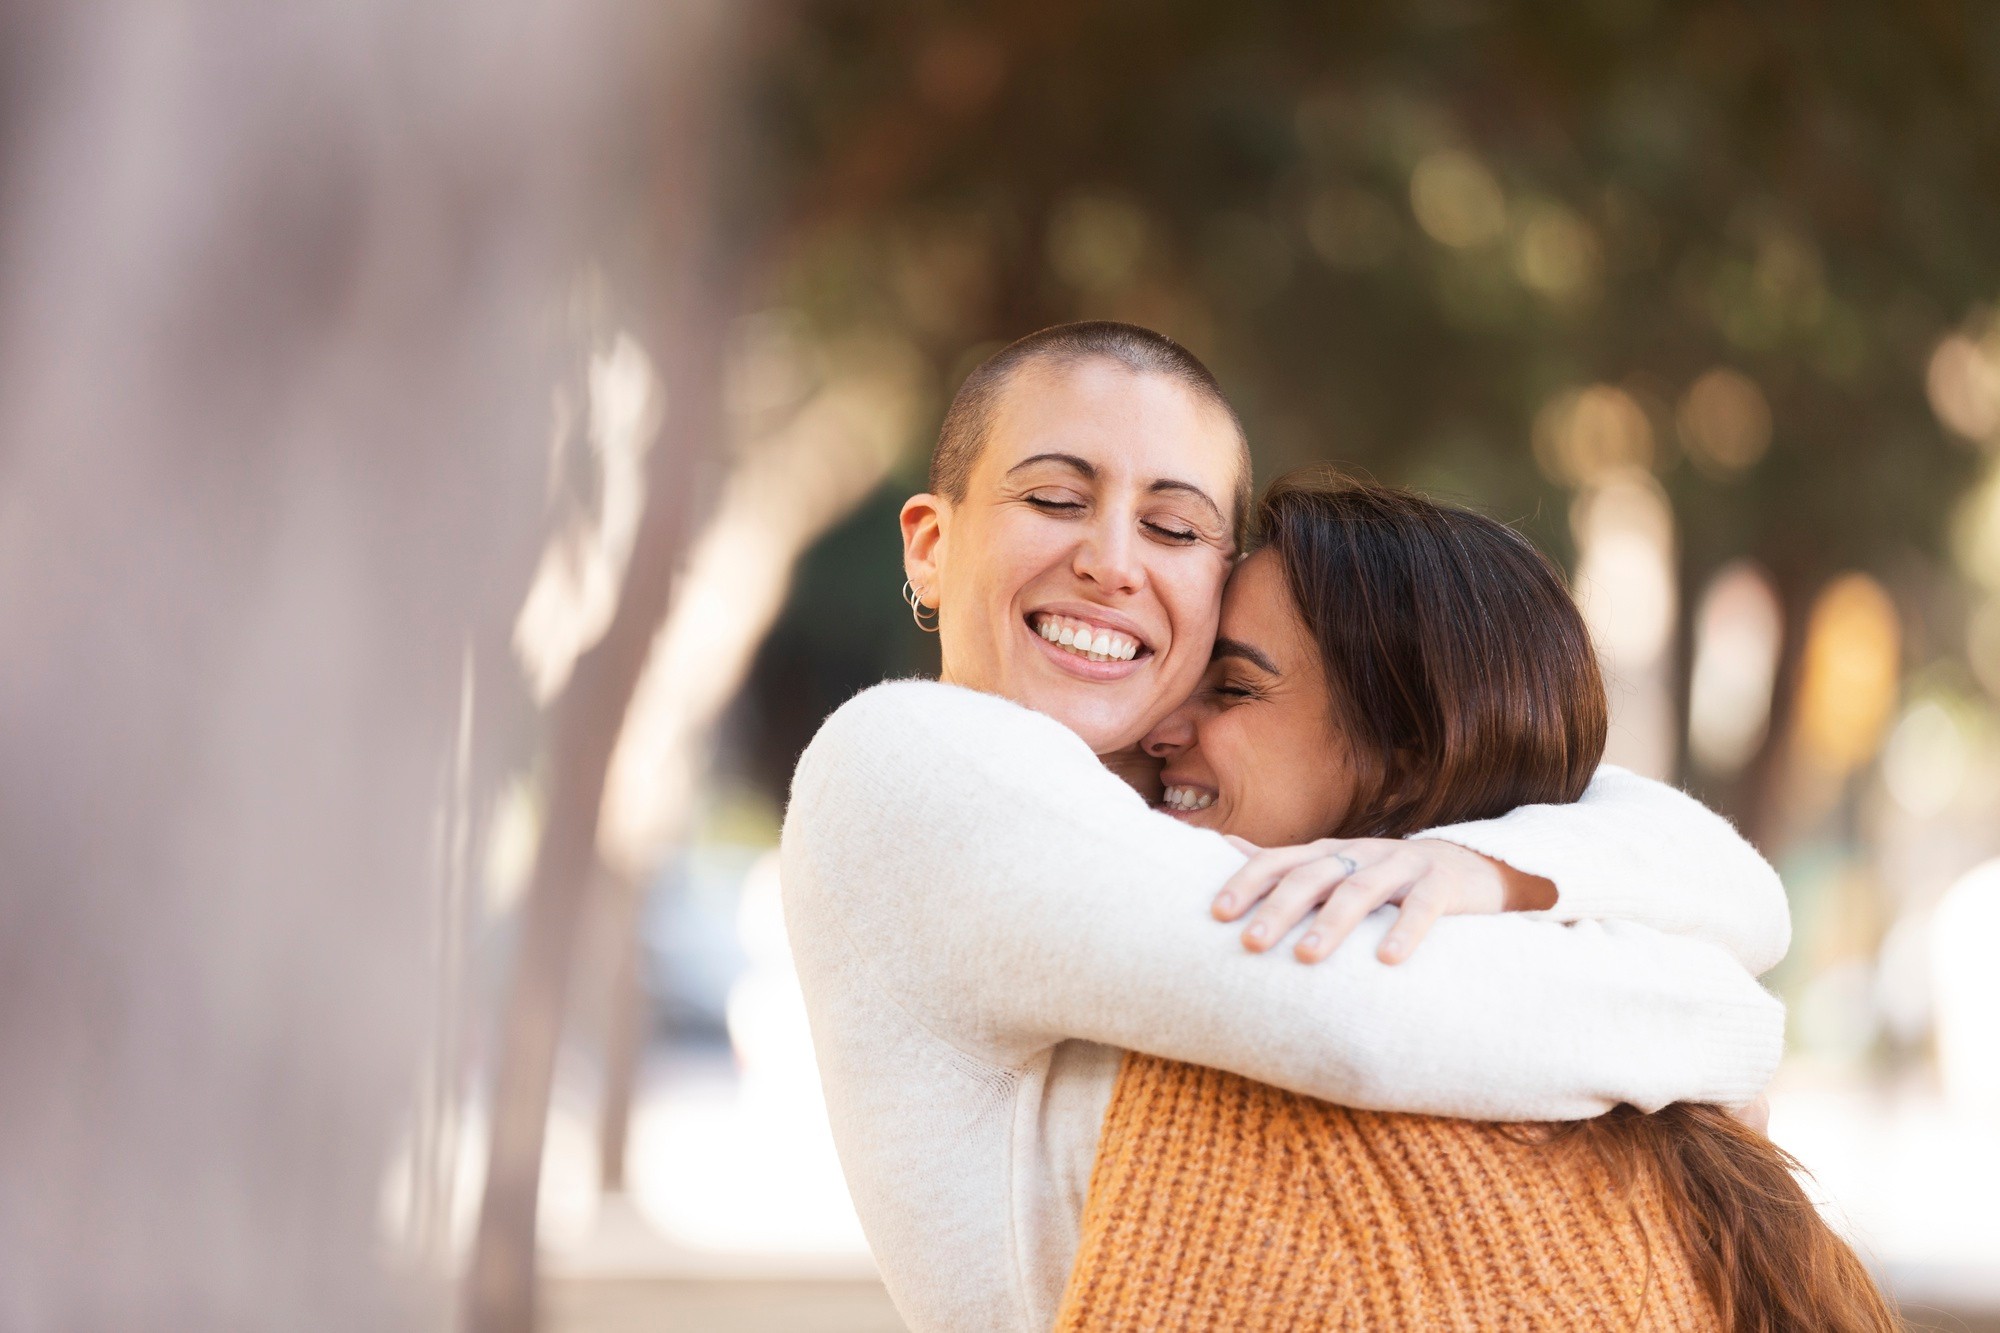 Abraço, massagem e mais: saiba como o contato físico pode ajudar a regular o hormônio do estresse